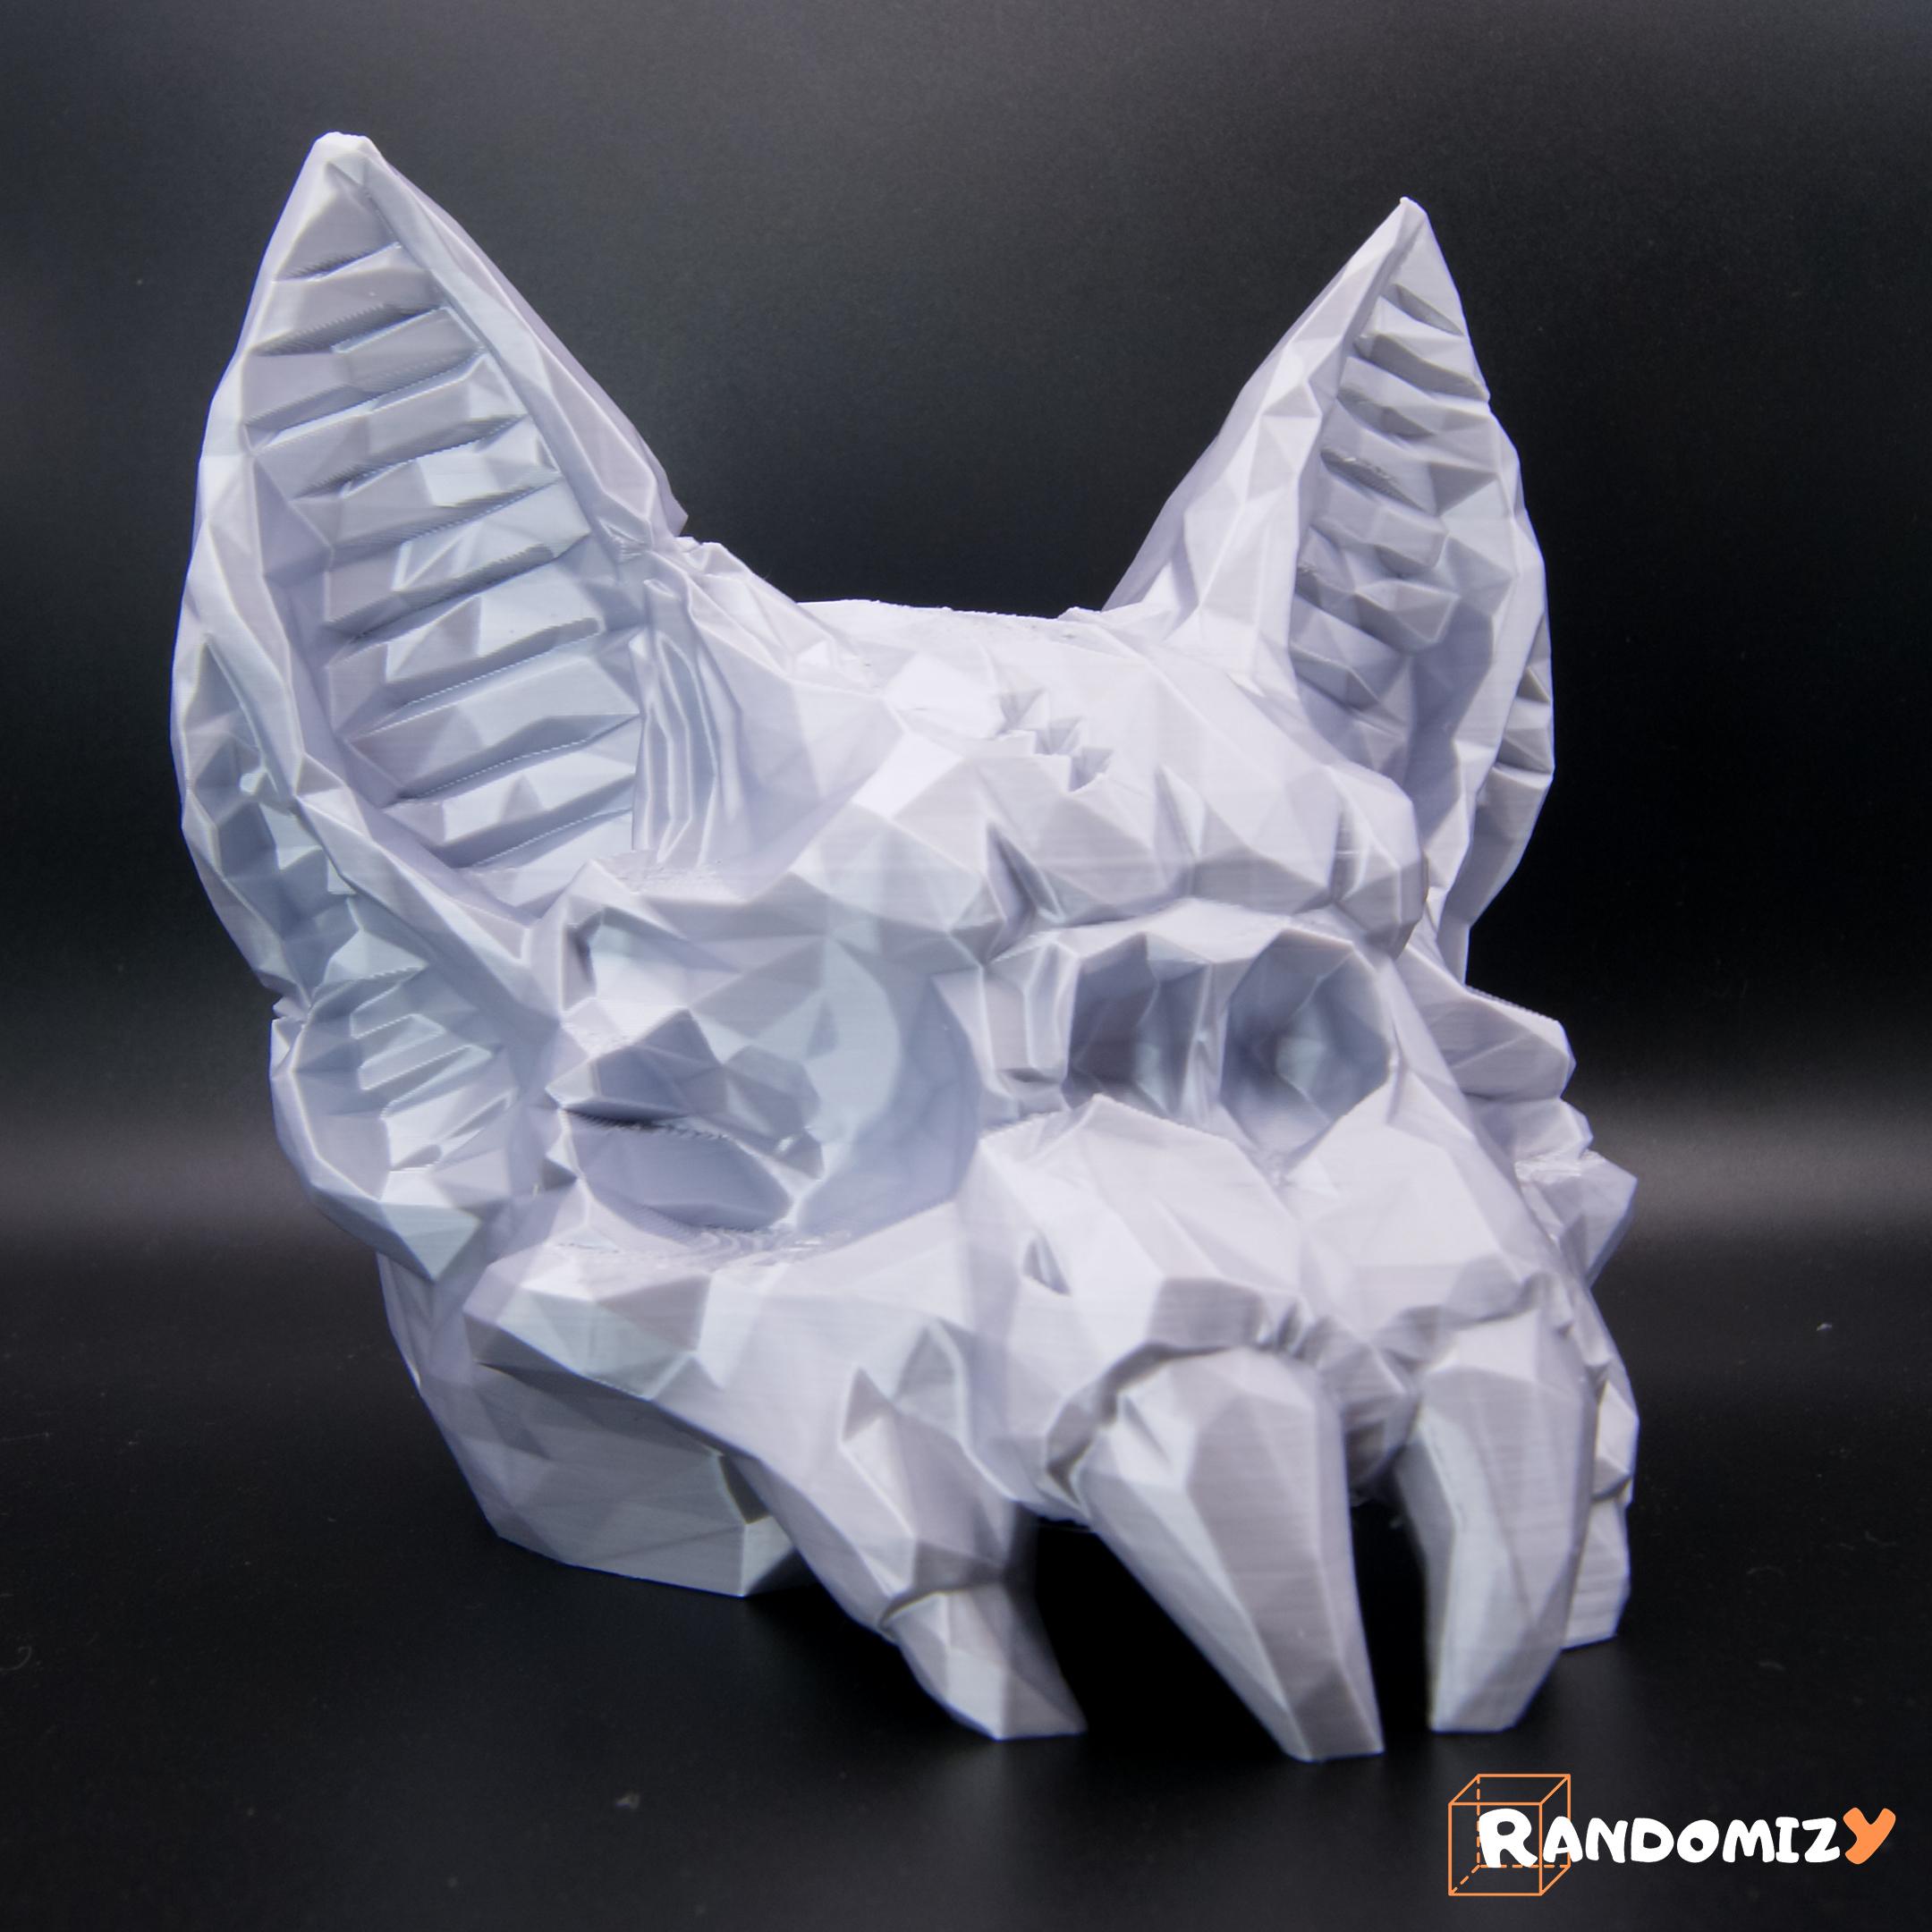 Bat Skull - Low Poly 3d model